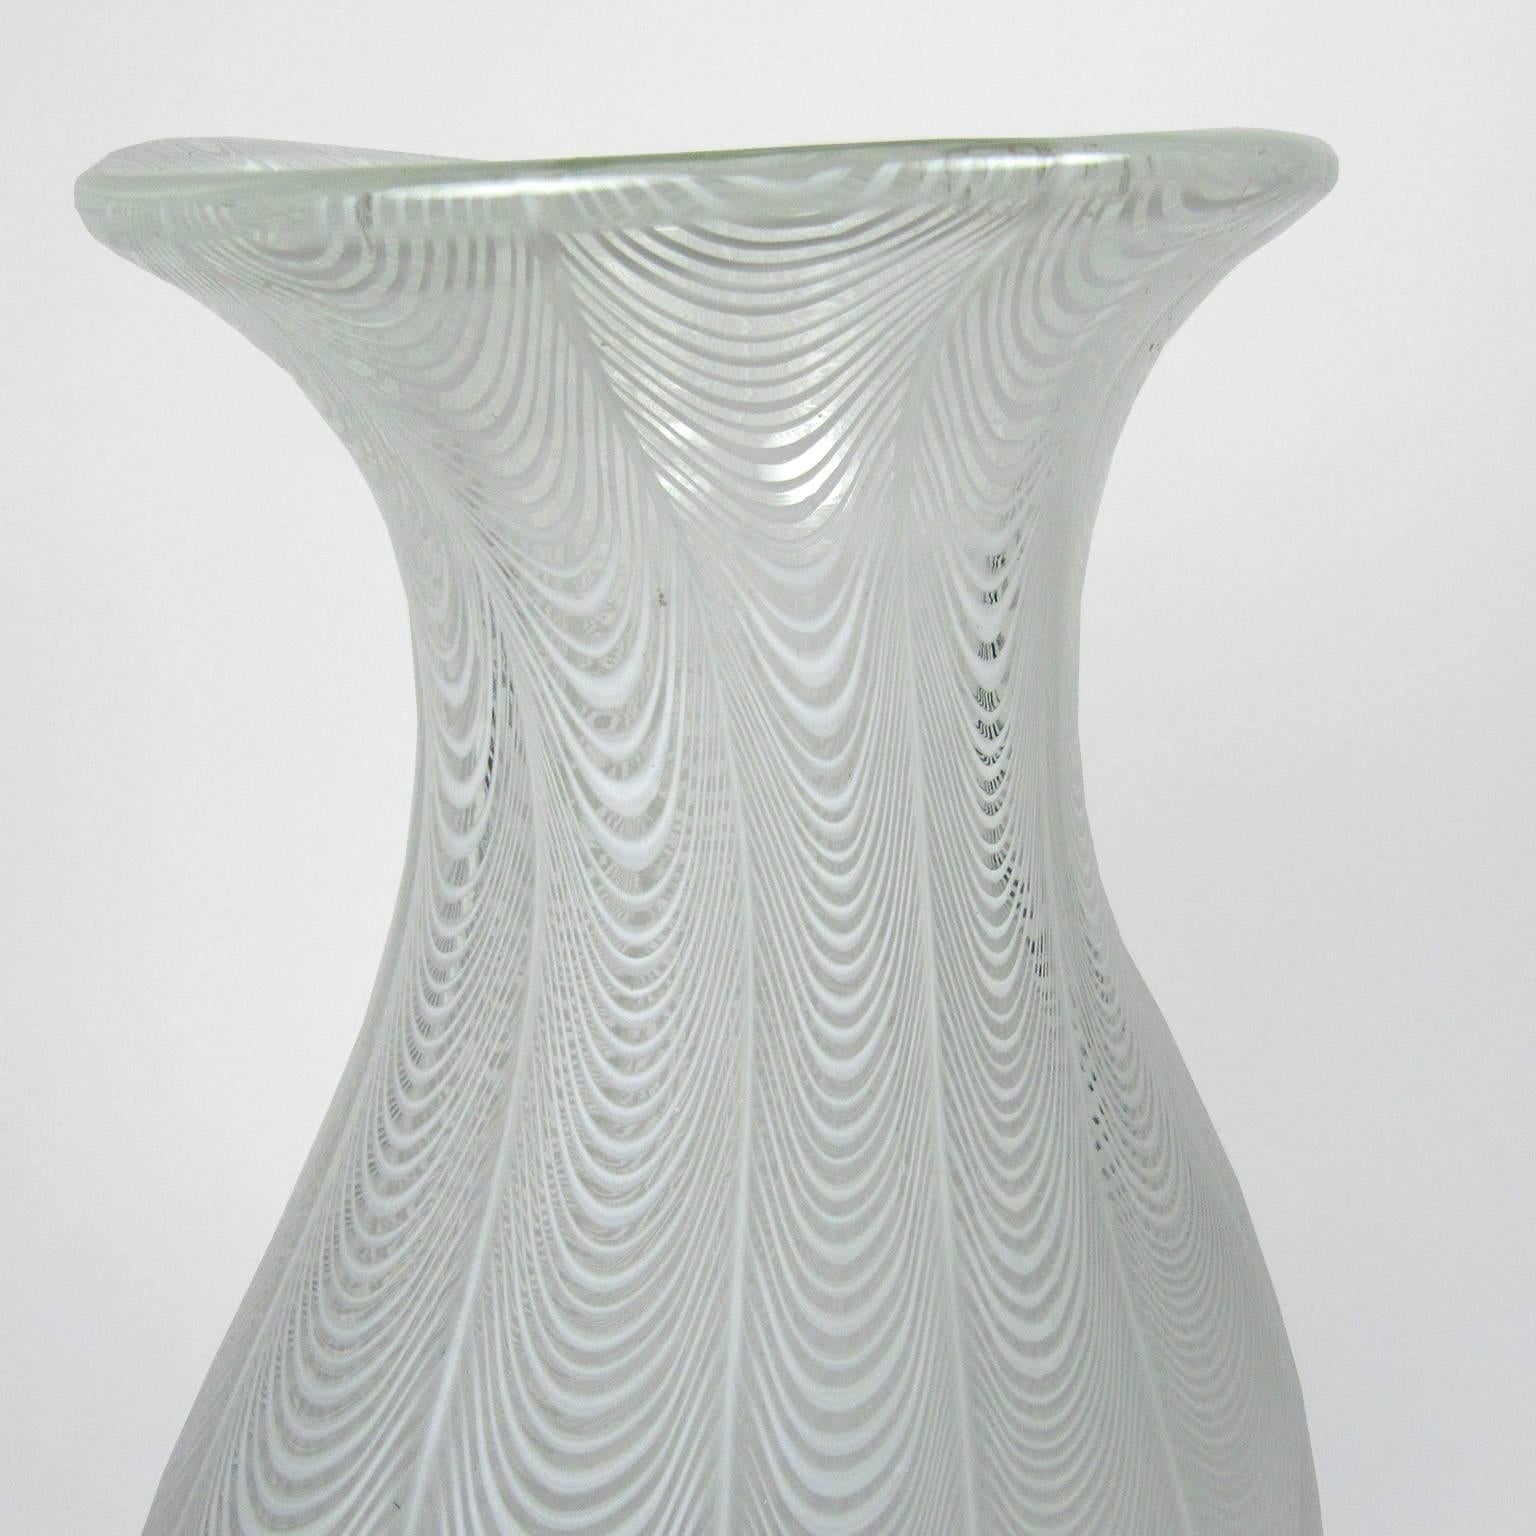 massive glass vase